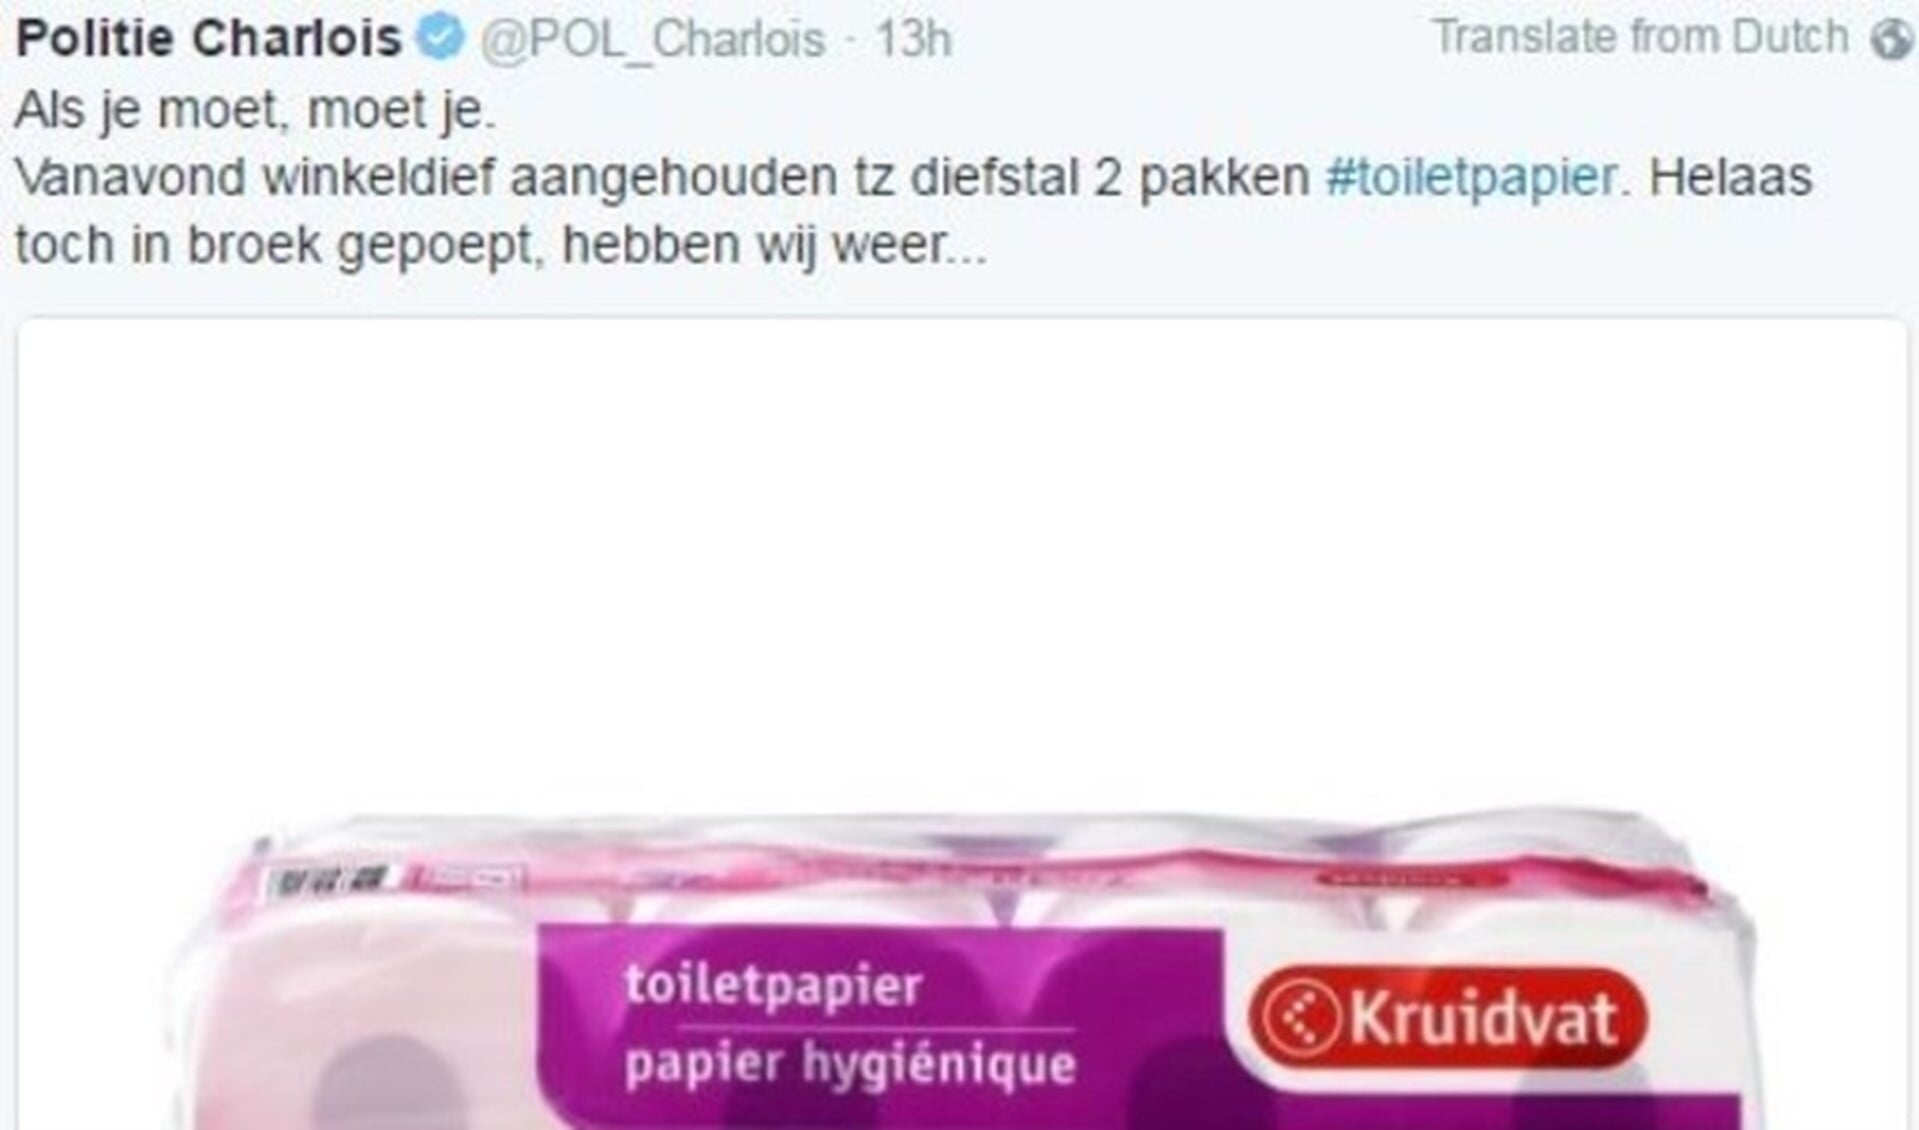 Tweet politie Charlois